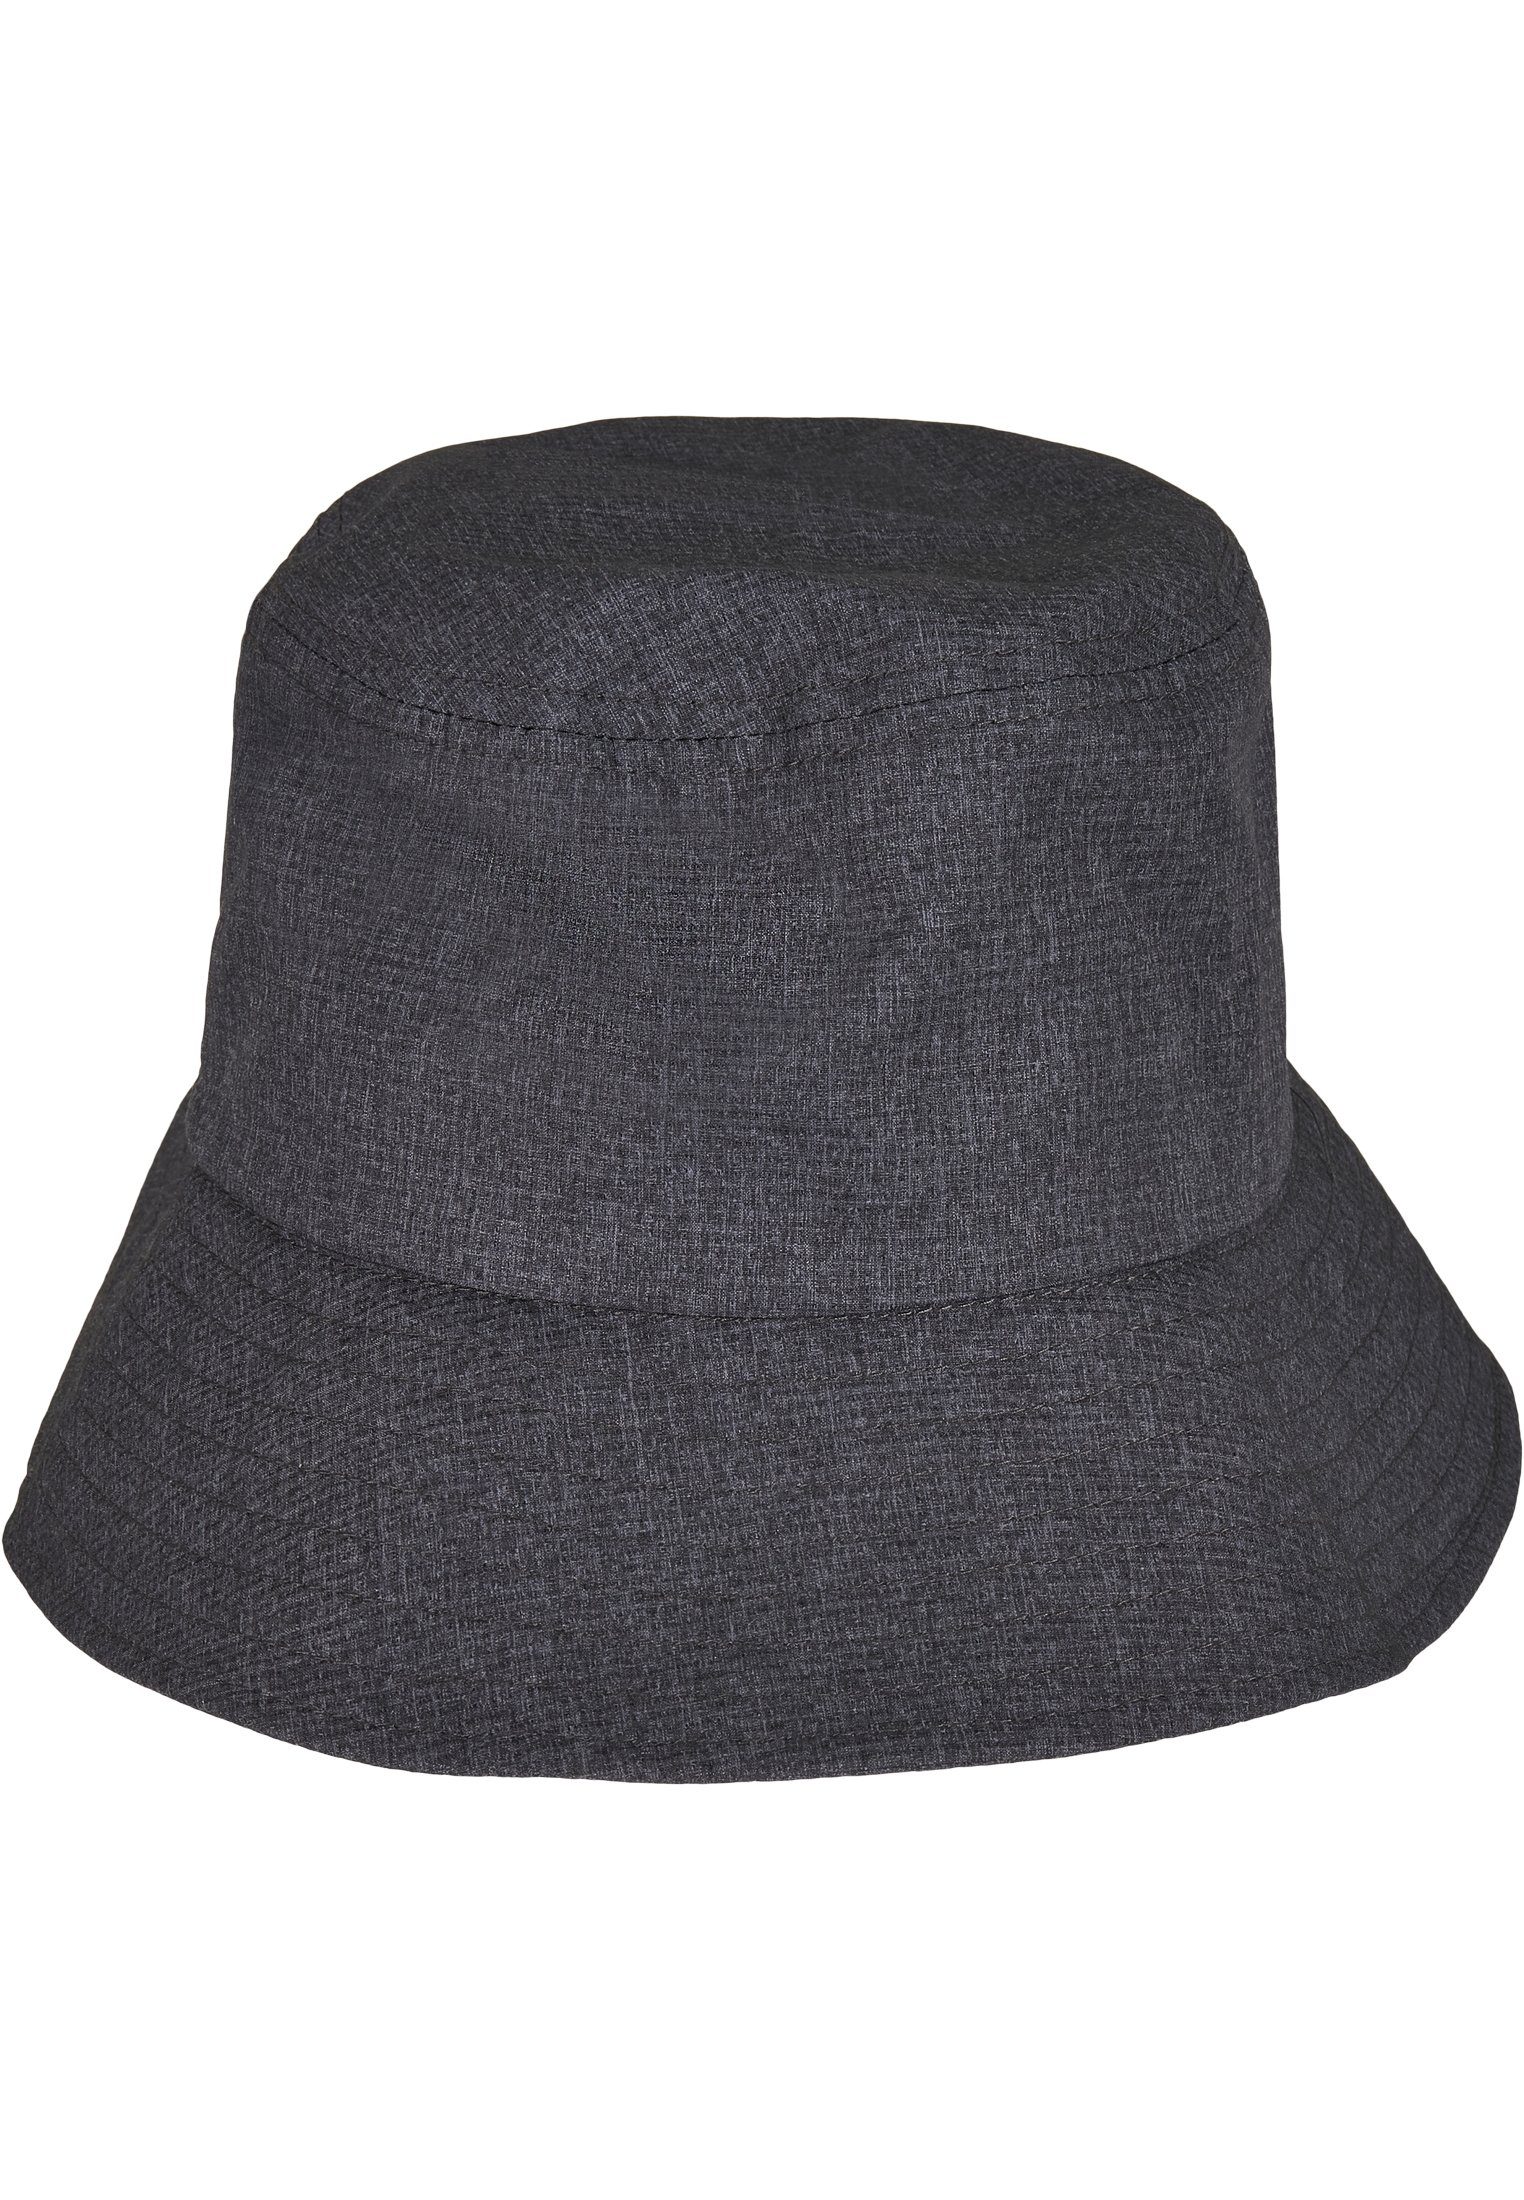 Bucket Cap Flexfit Hat Flexfit Bucket Flex Hat Adjustable heathergrey